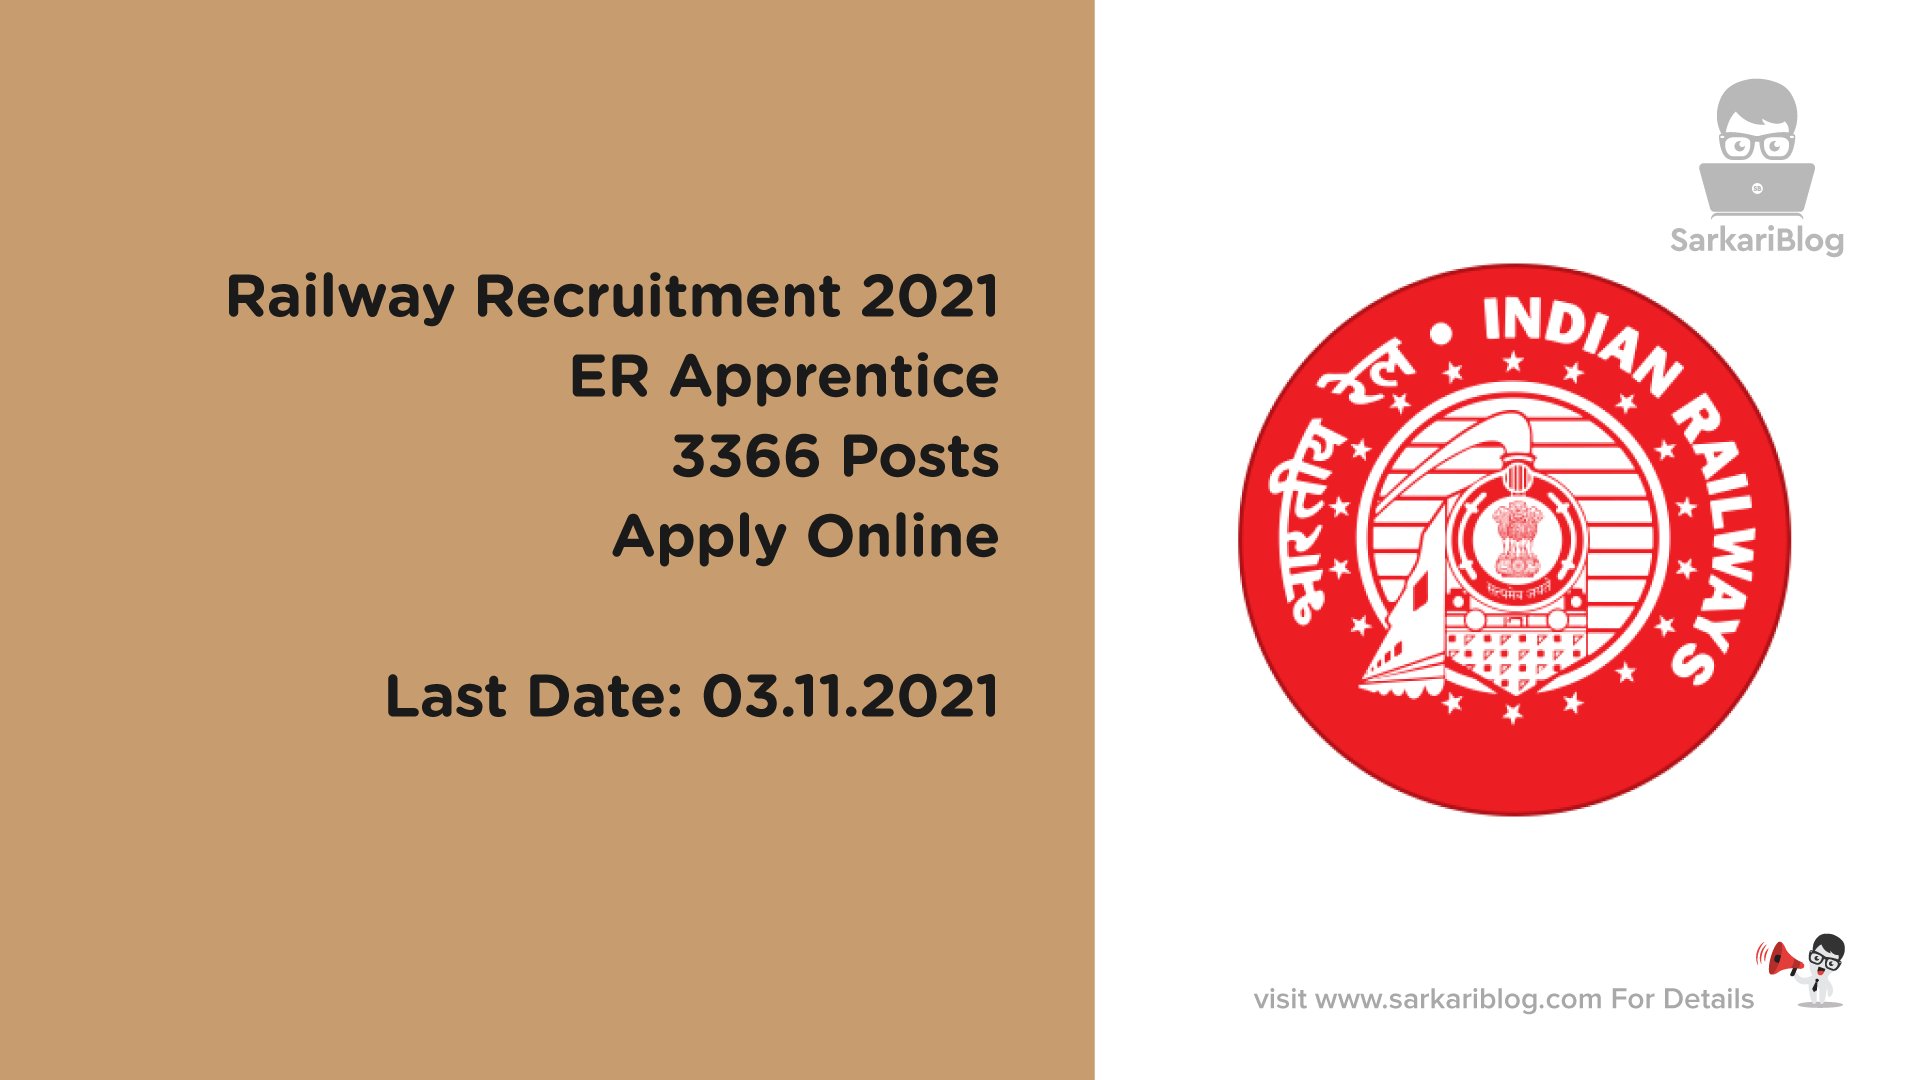 Railway Recruitment 2021, ER Apprentice, 3366 Posts, Apply Online